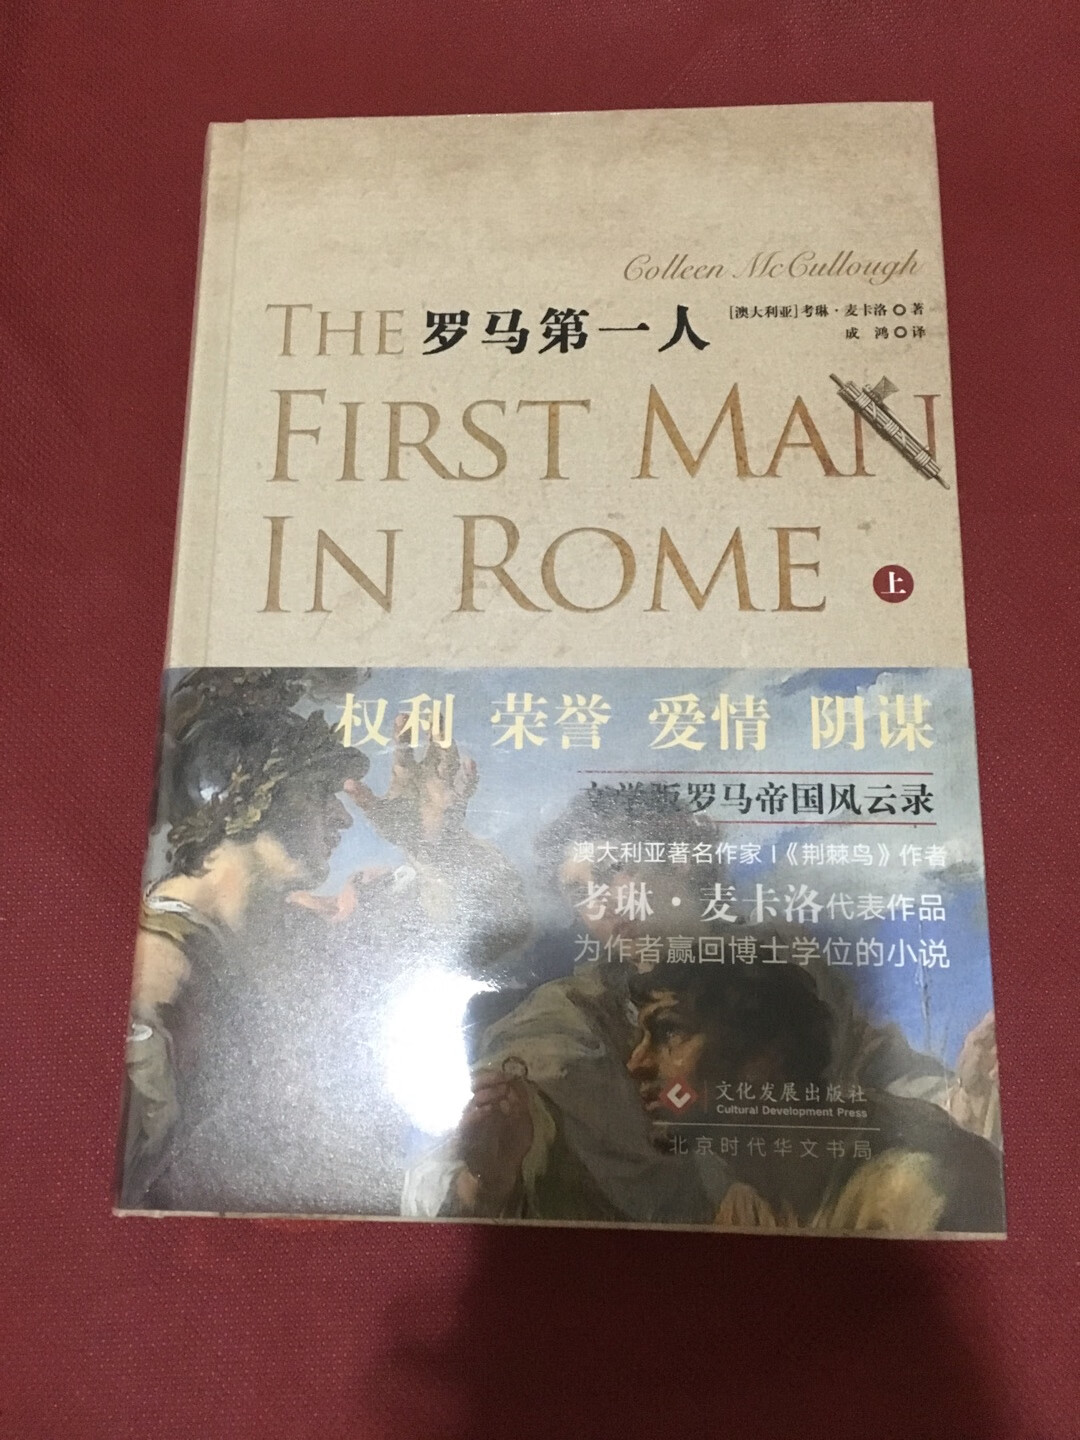 这套小说描写了古罗马最激荡的一段历史，无数历史巨人是其中的主角：马略、苏拉、凯撒、庞培。